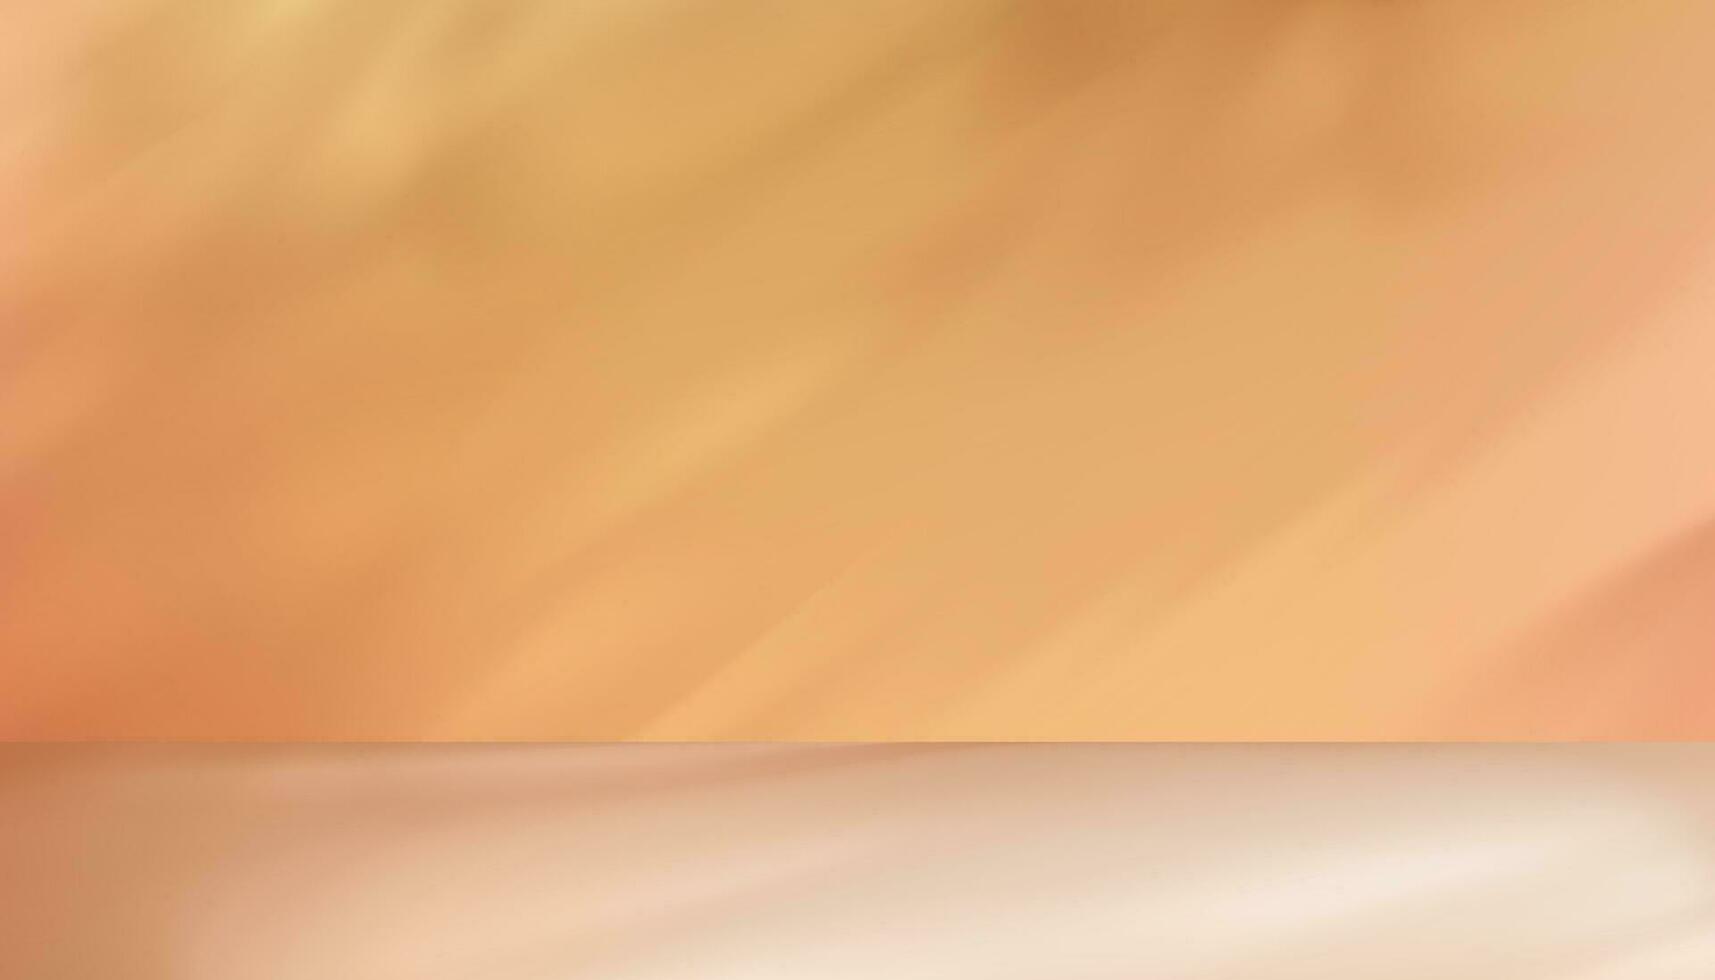 3d Beige Studio Hintergrund Anzeige mit Schatten Blätter auf Zement Mauer Zimmer, durchsichtig Sanft Licht zum Geäst Blatt, Konzept zum kosmetisch Produkt Präsentation, Verkauf, online Geschäft im Herbst Herbst Jahreszeit vektor